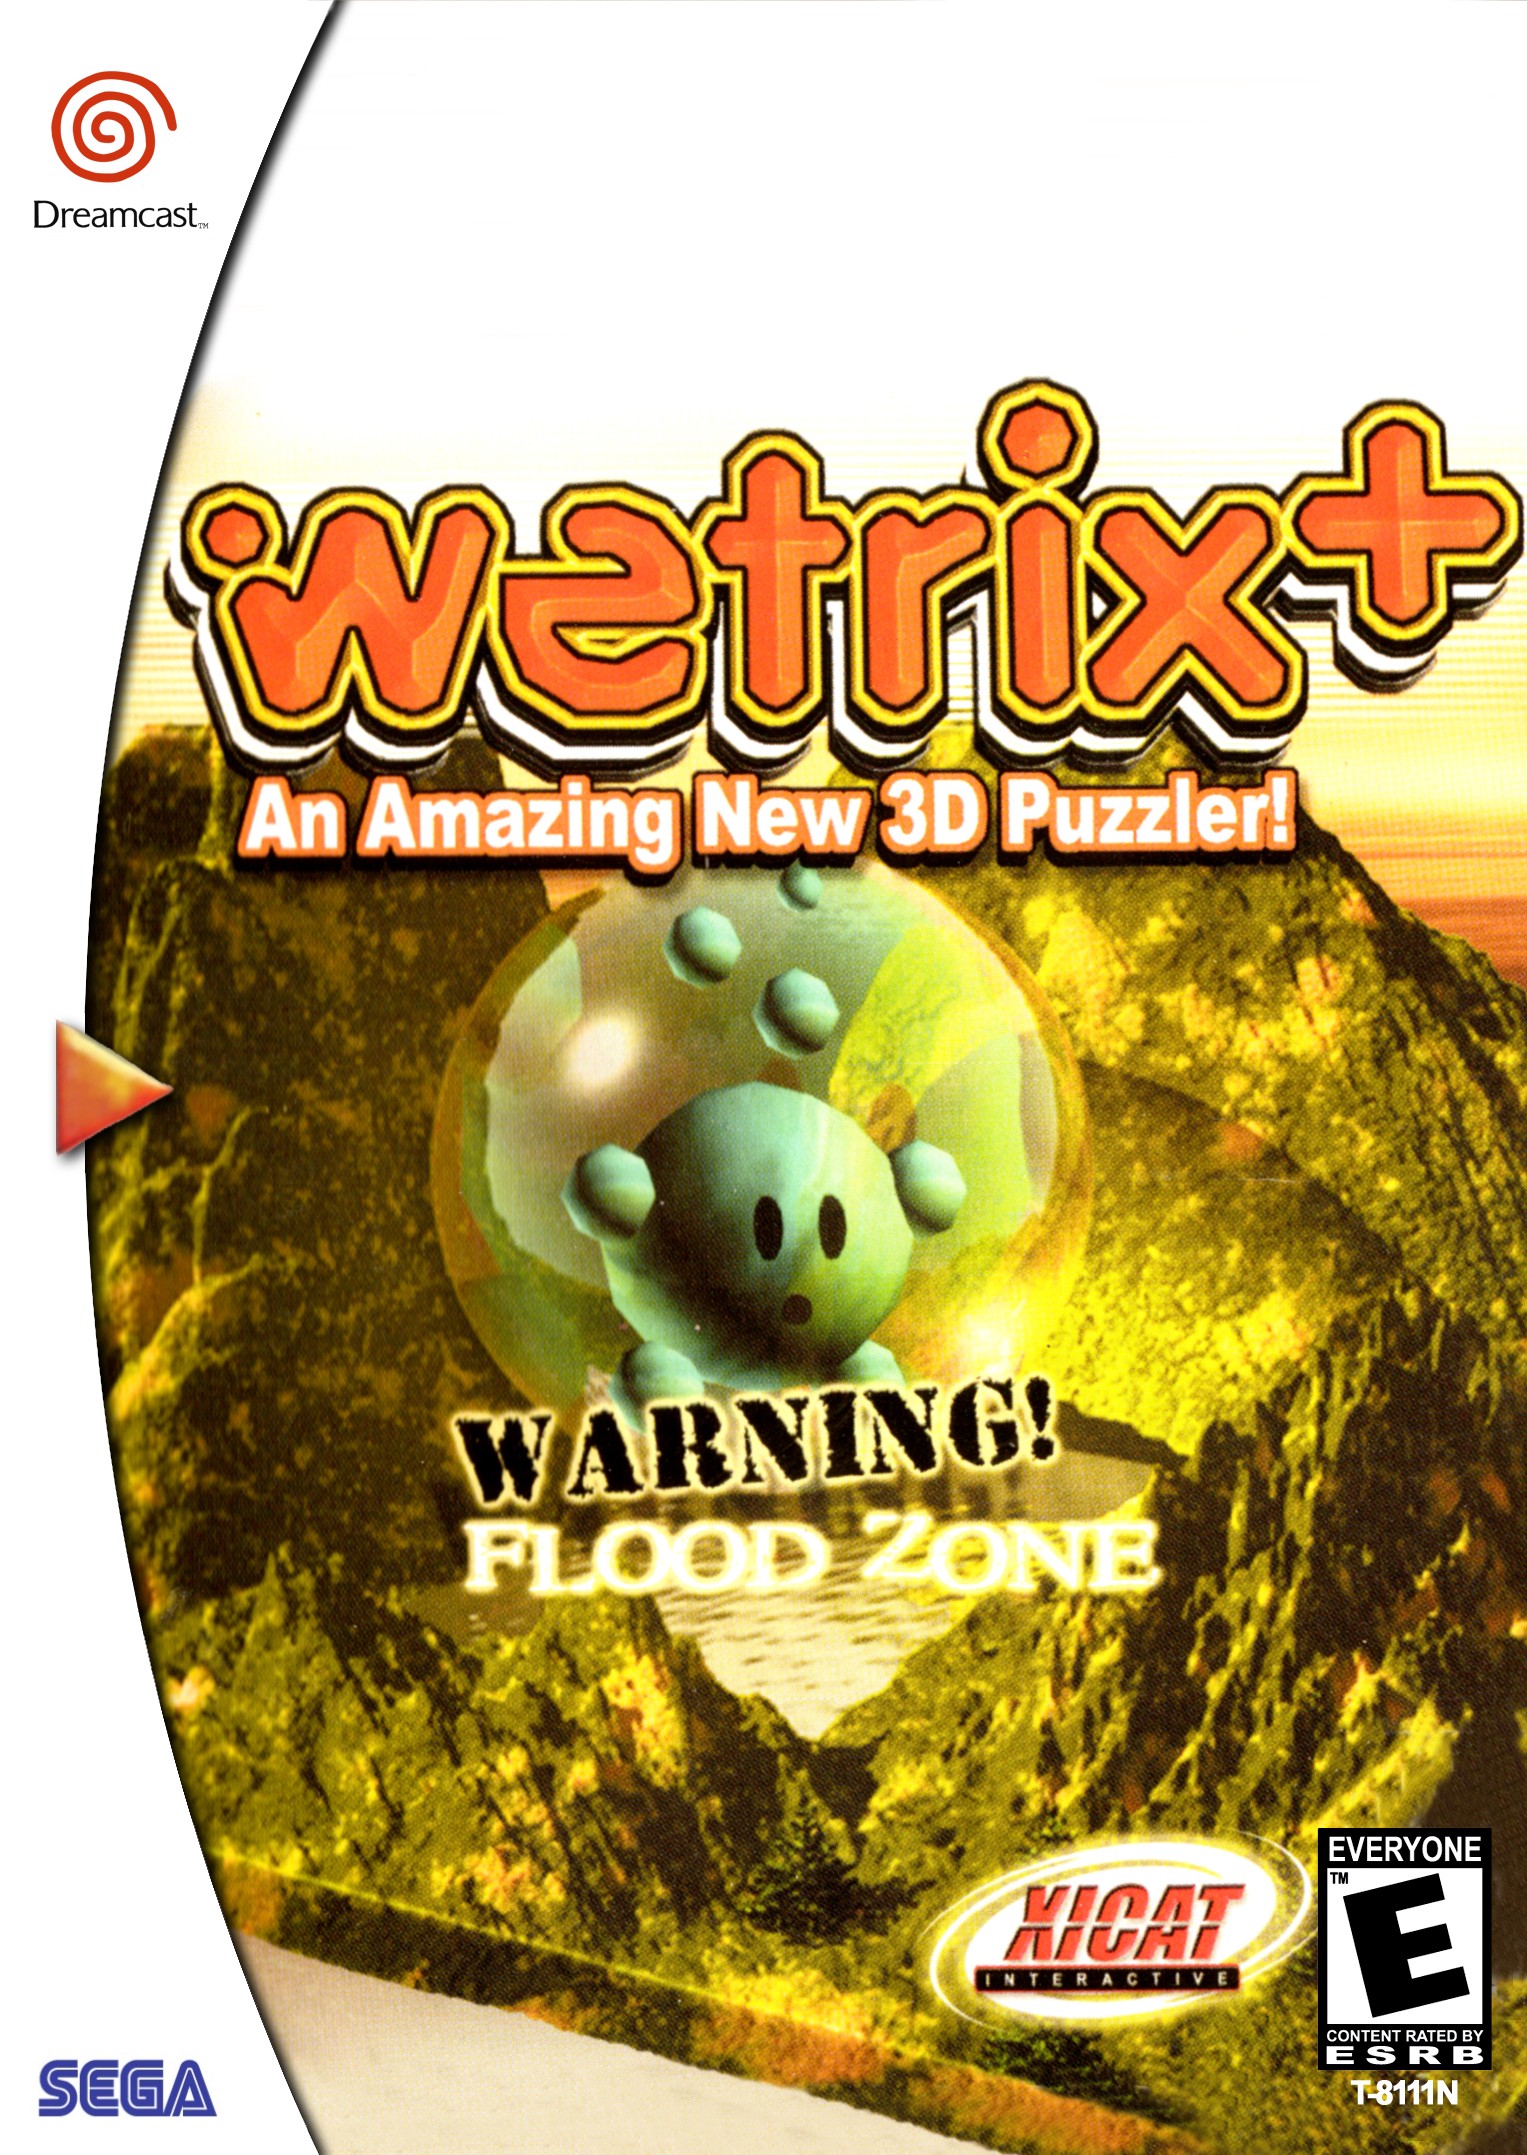 'Wetrix'